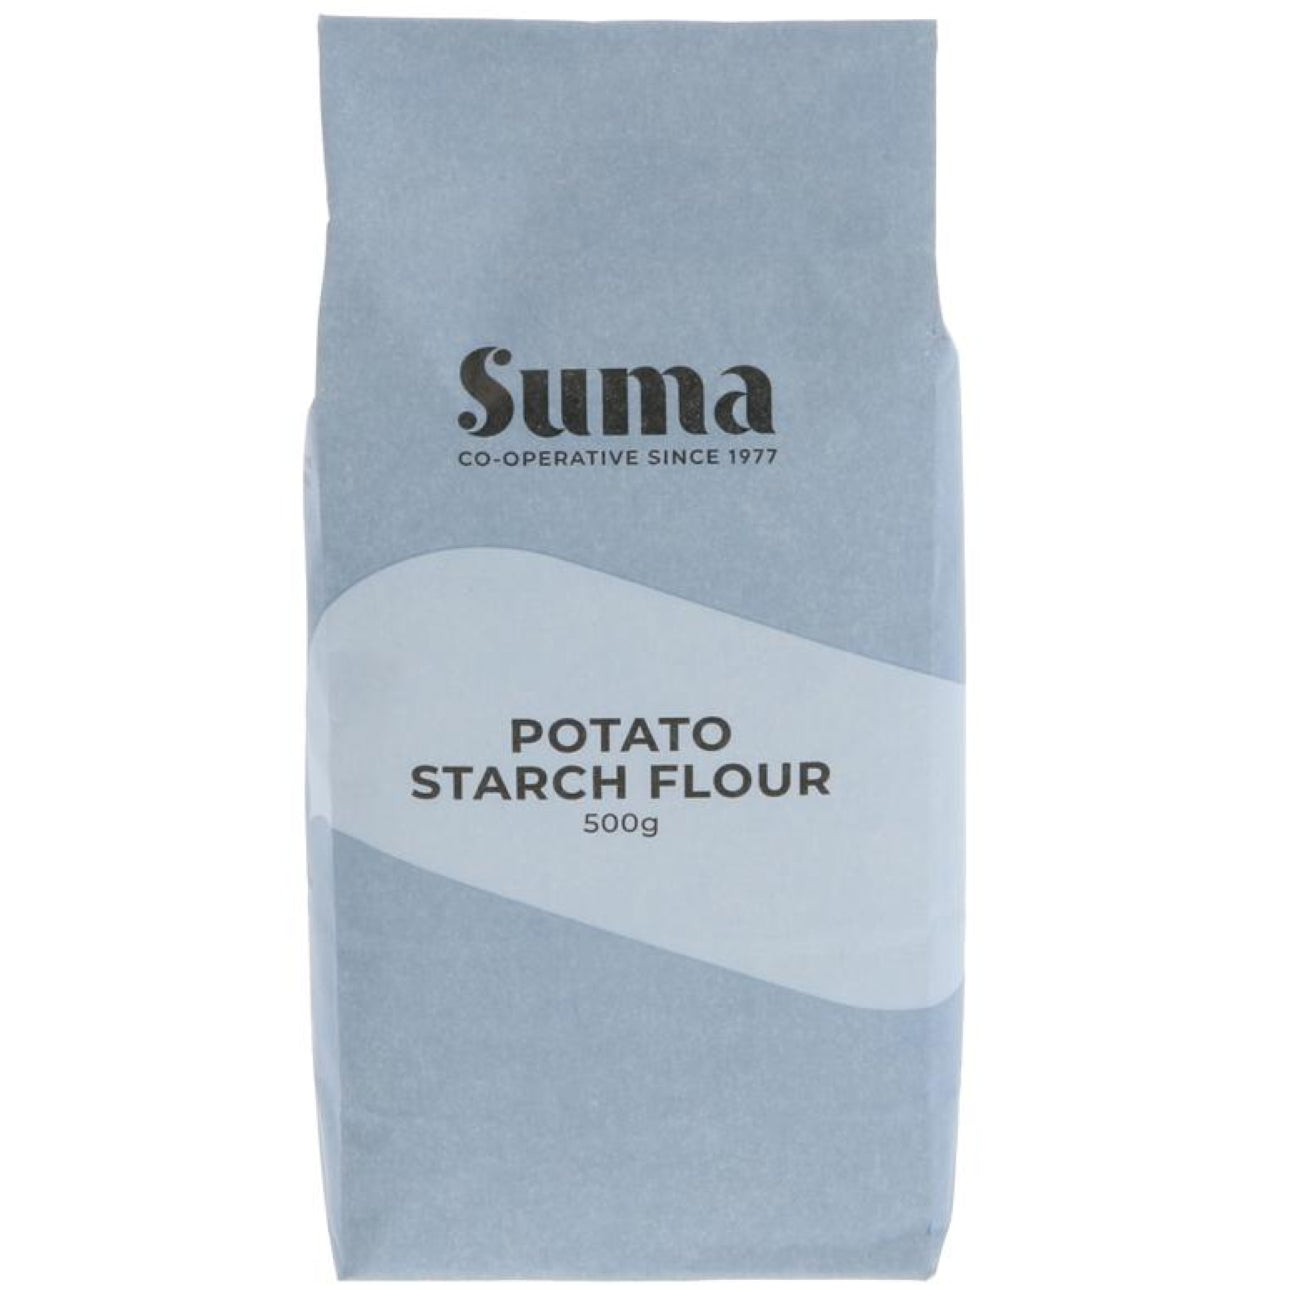 Potato Starch Flour 500g